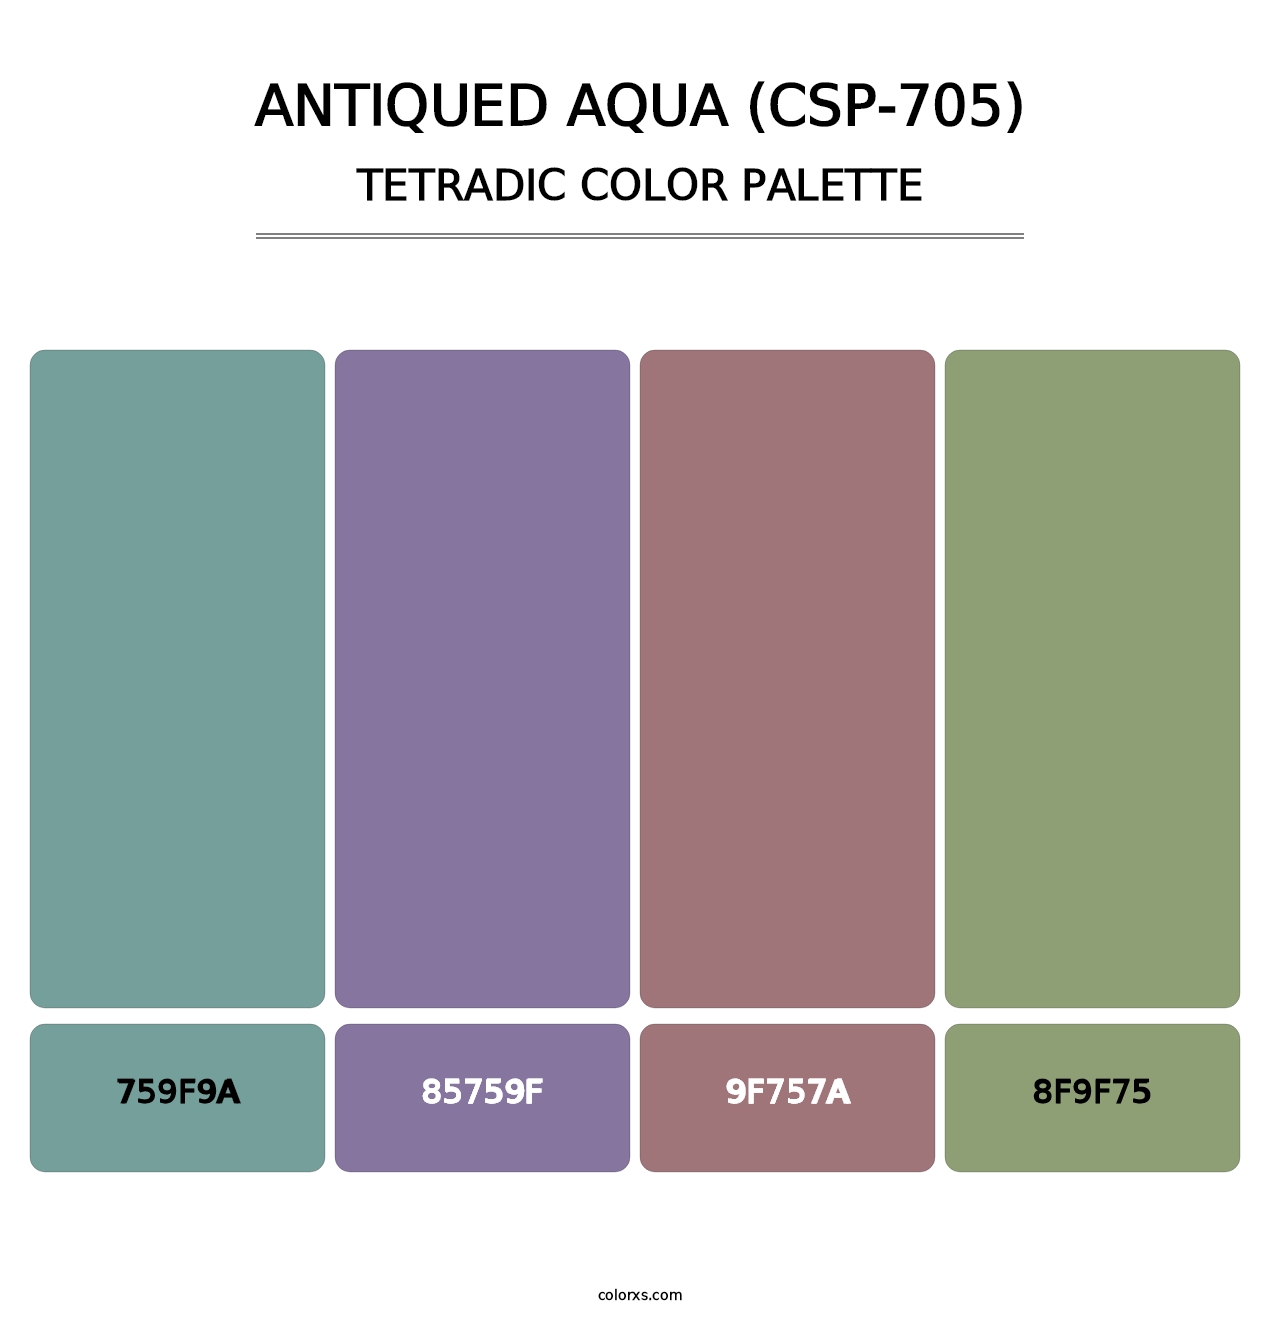 Antiqued Aqua (CSP-705) - Tetradic Color Palette